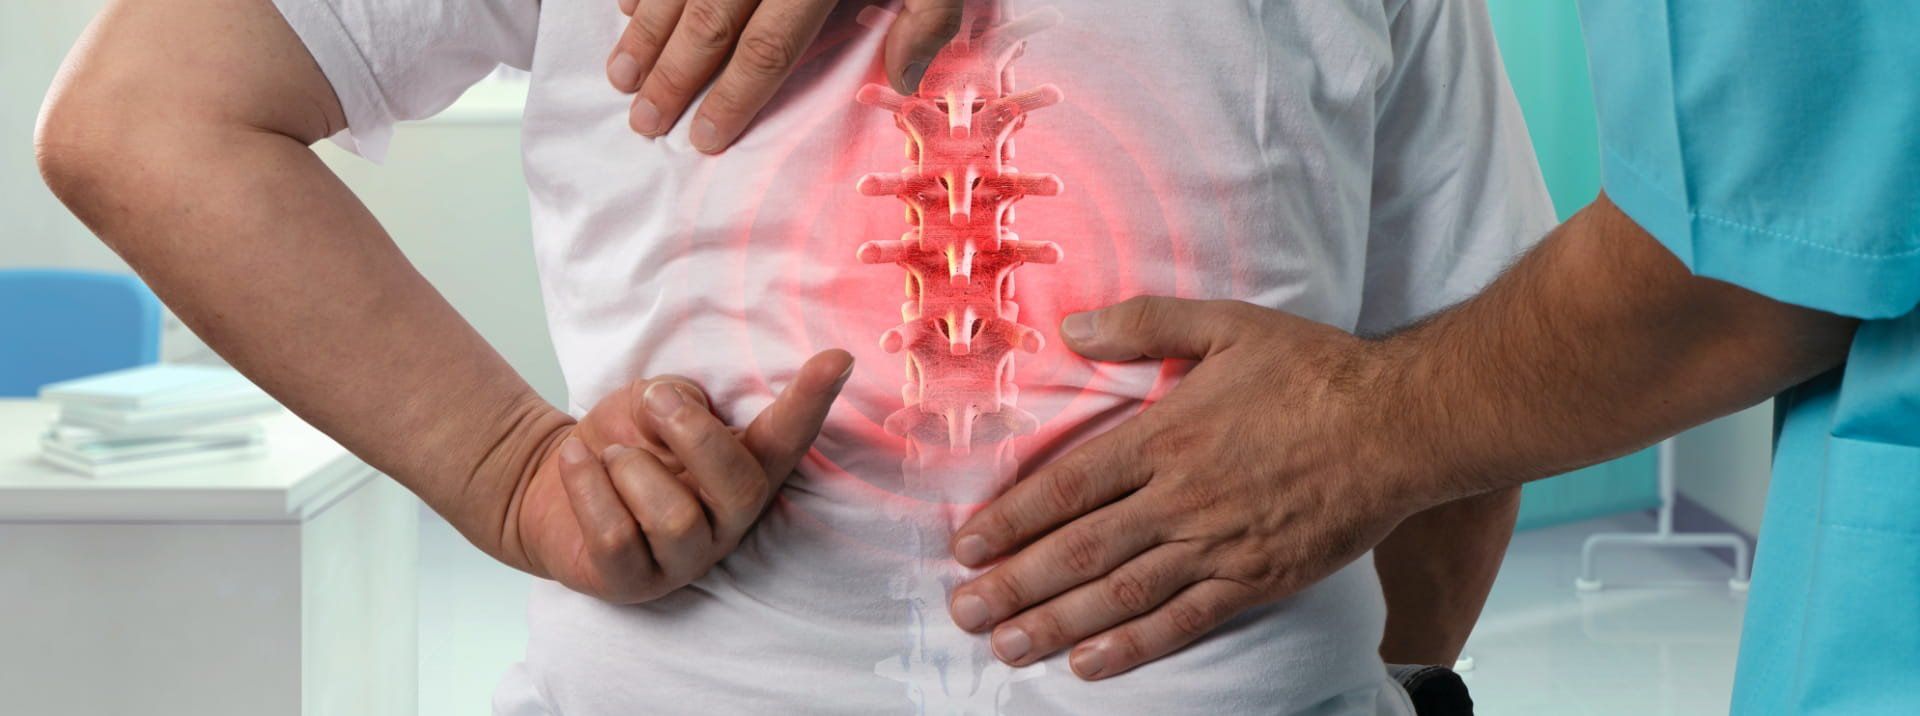 Fysiologie van de wervelkolom en oorzaken van rugpijn - Adaptic